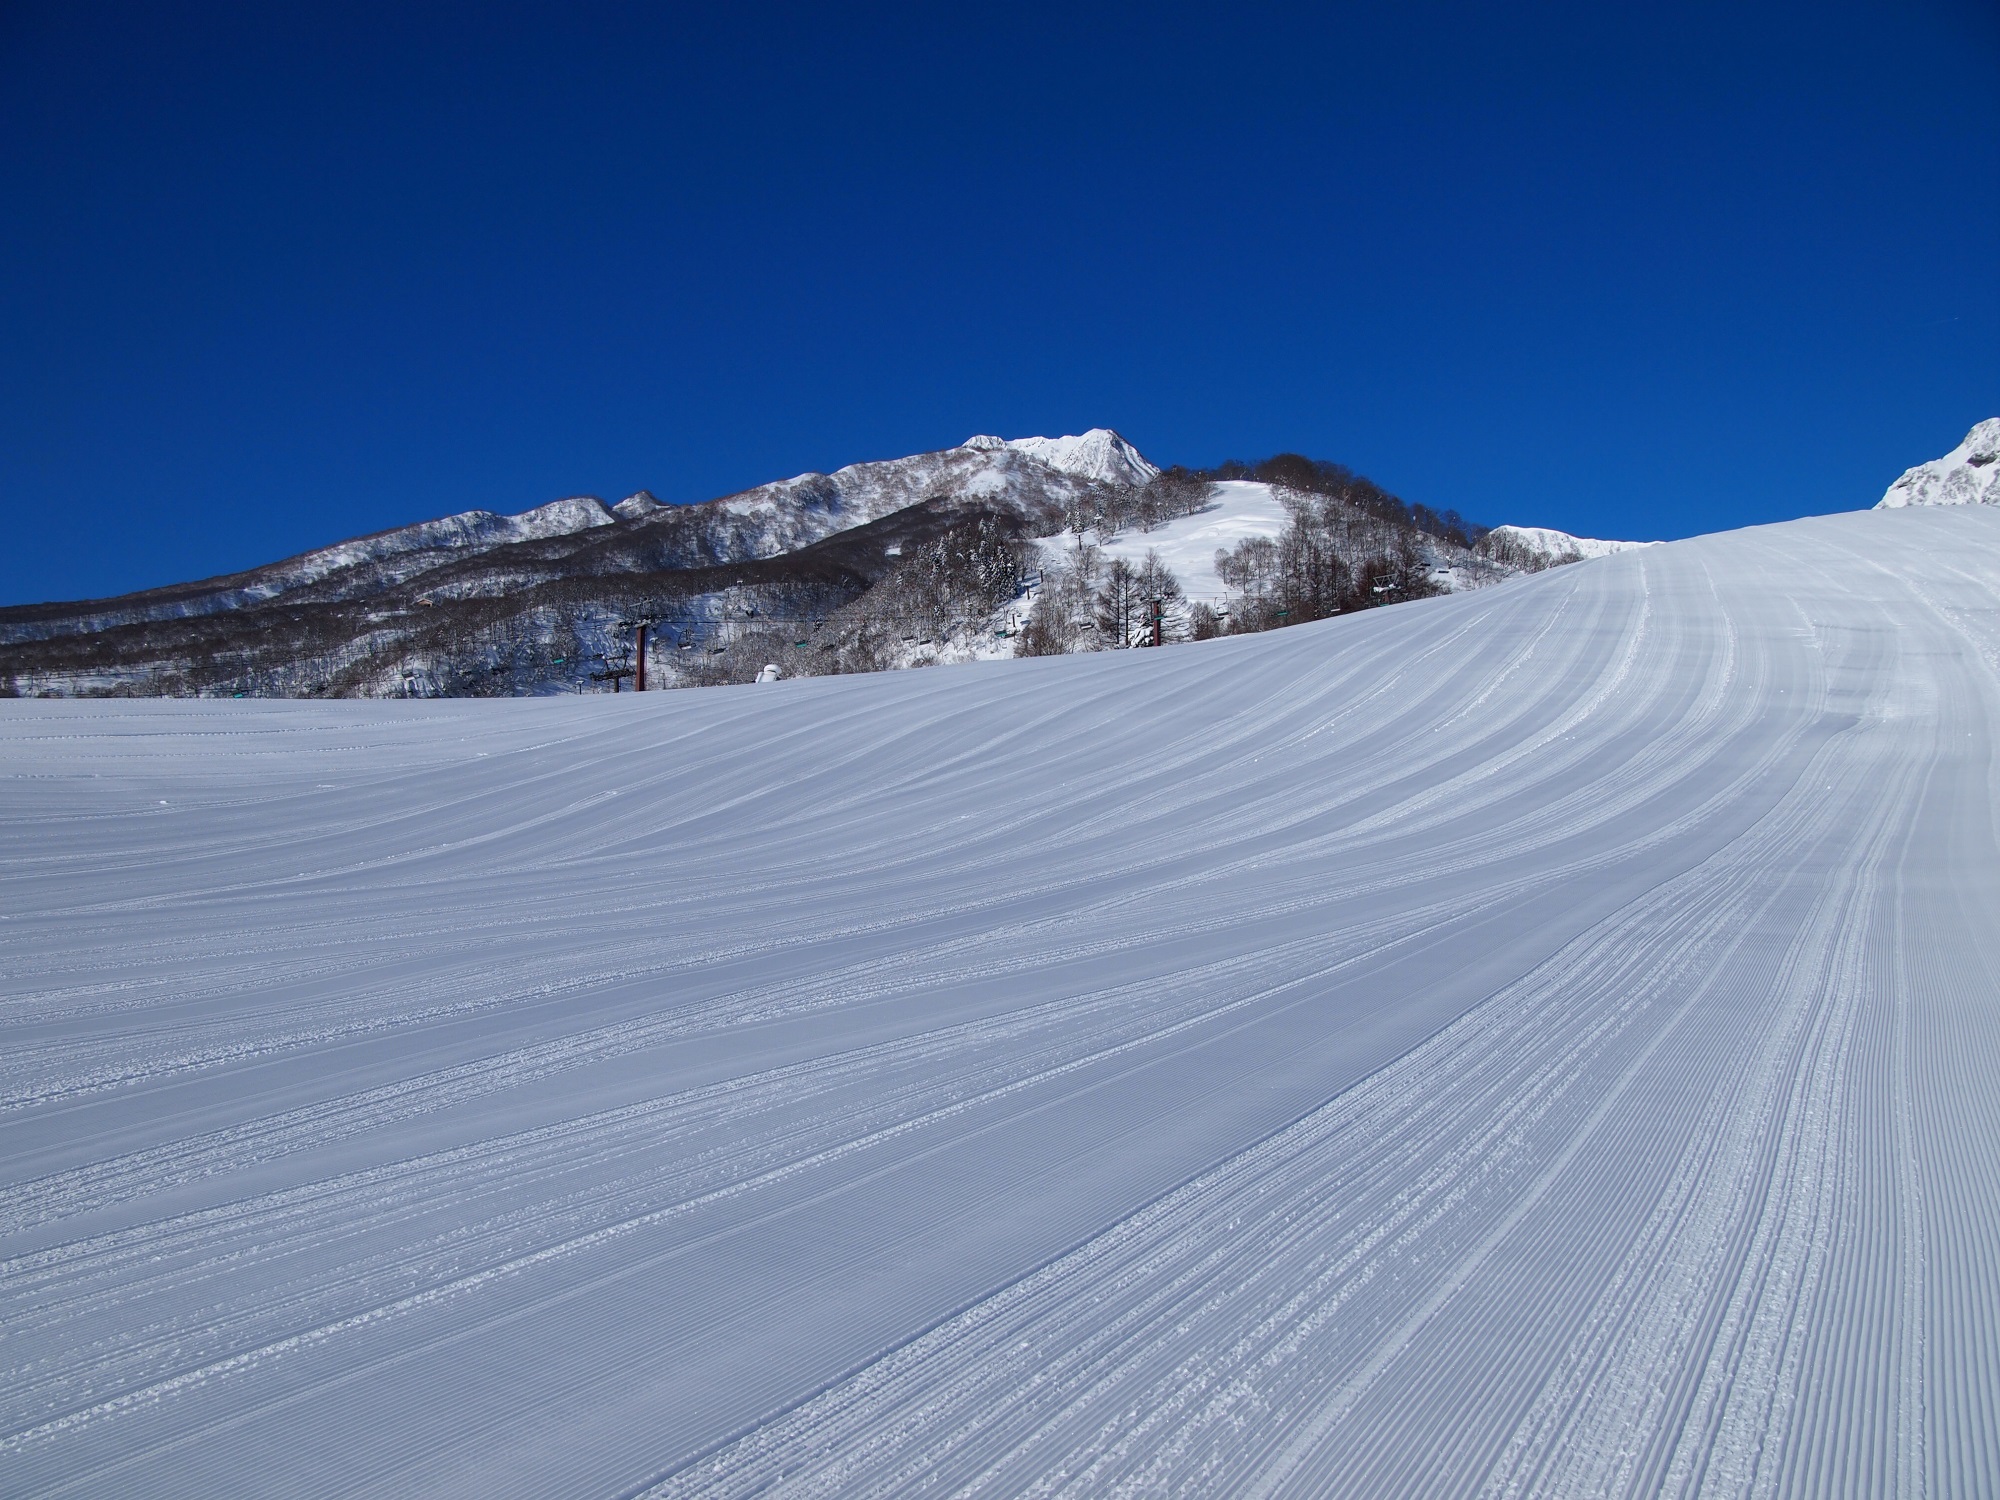 Akakura Onsen Ski Area